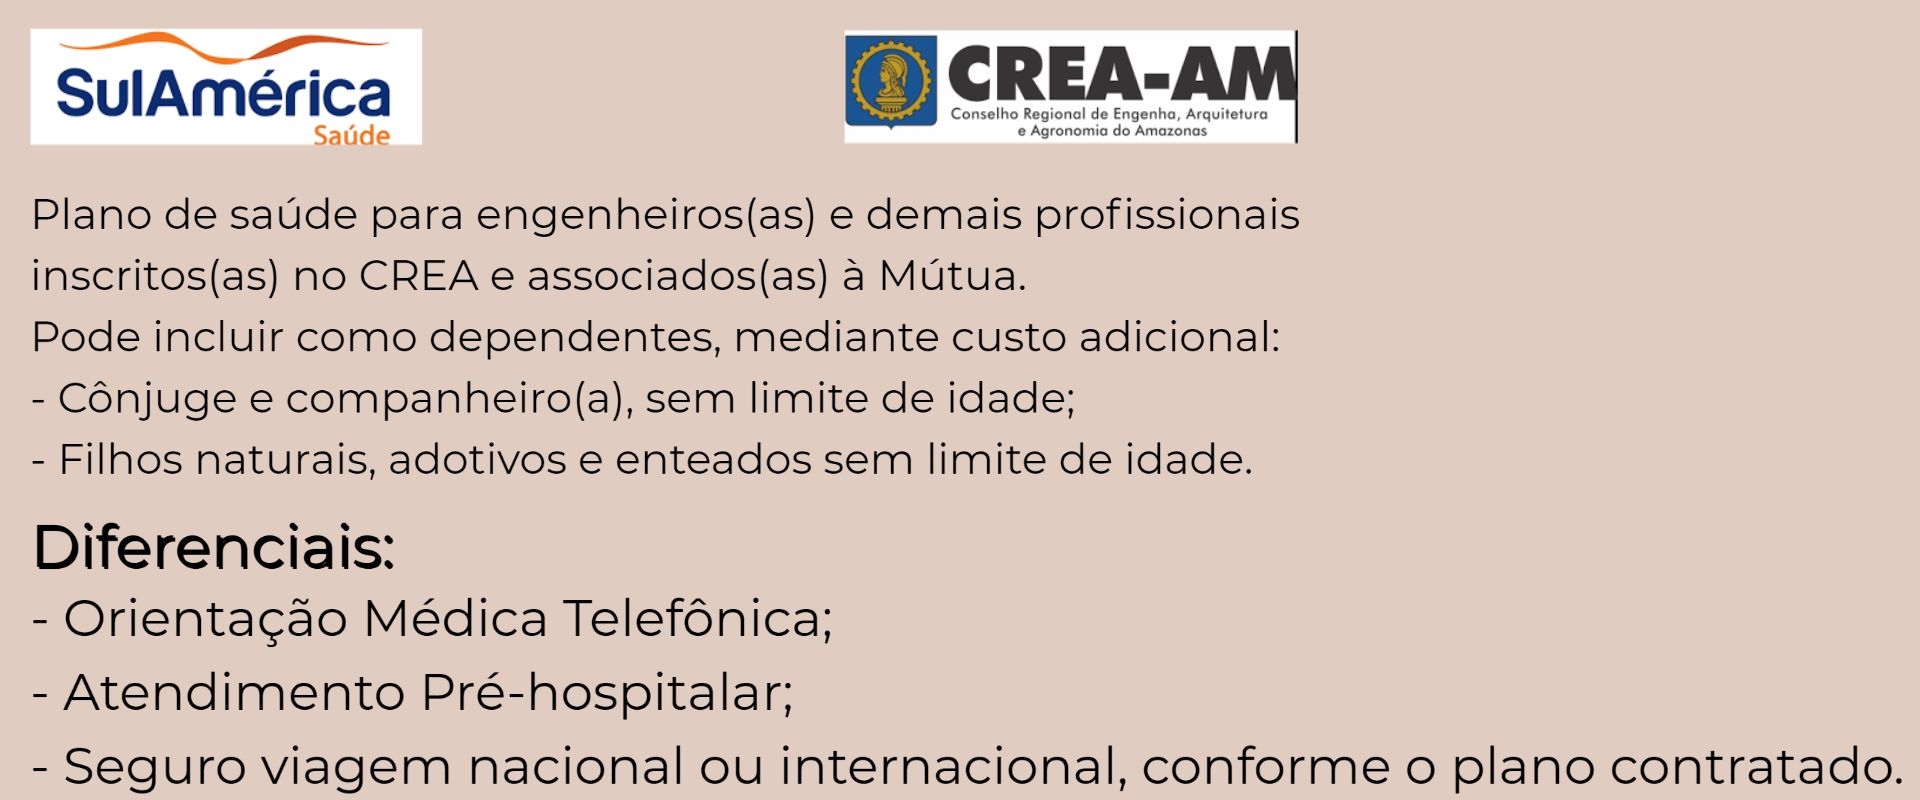 Sul América CREA-AM